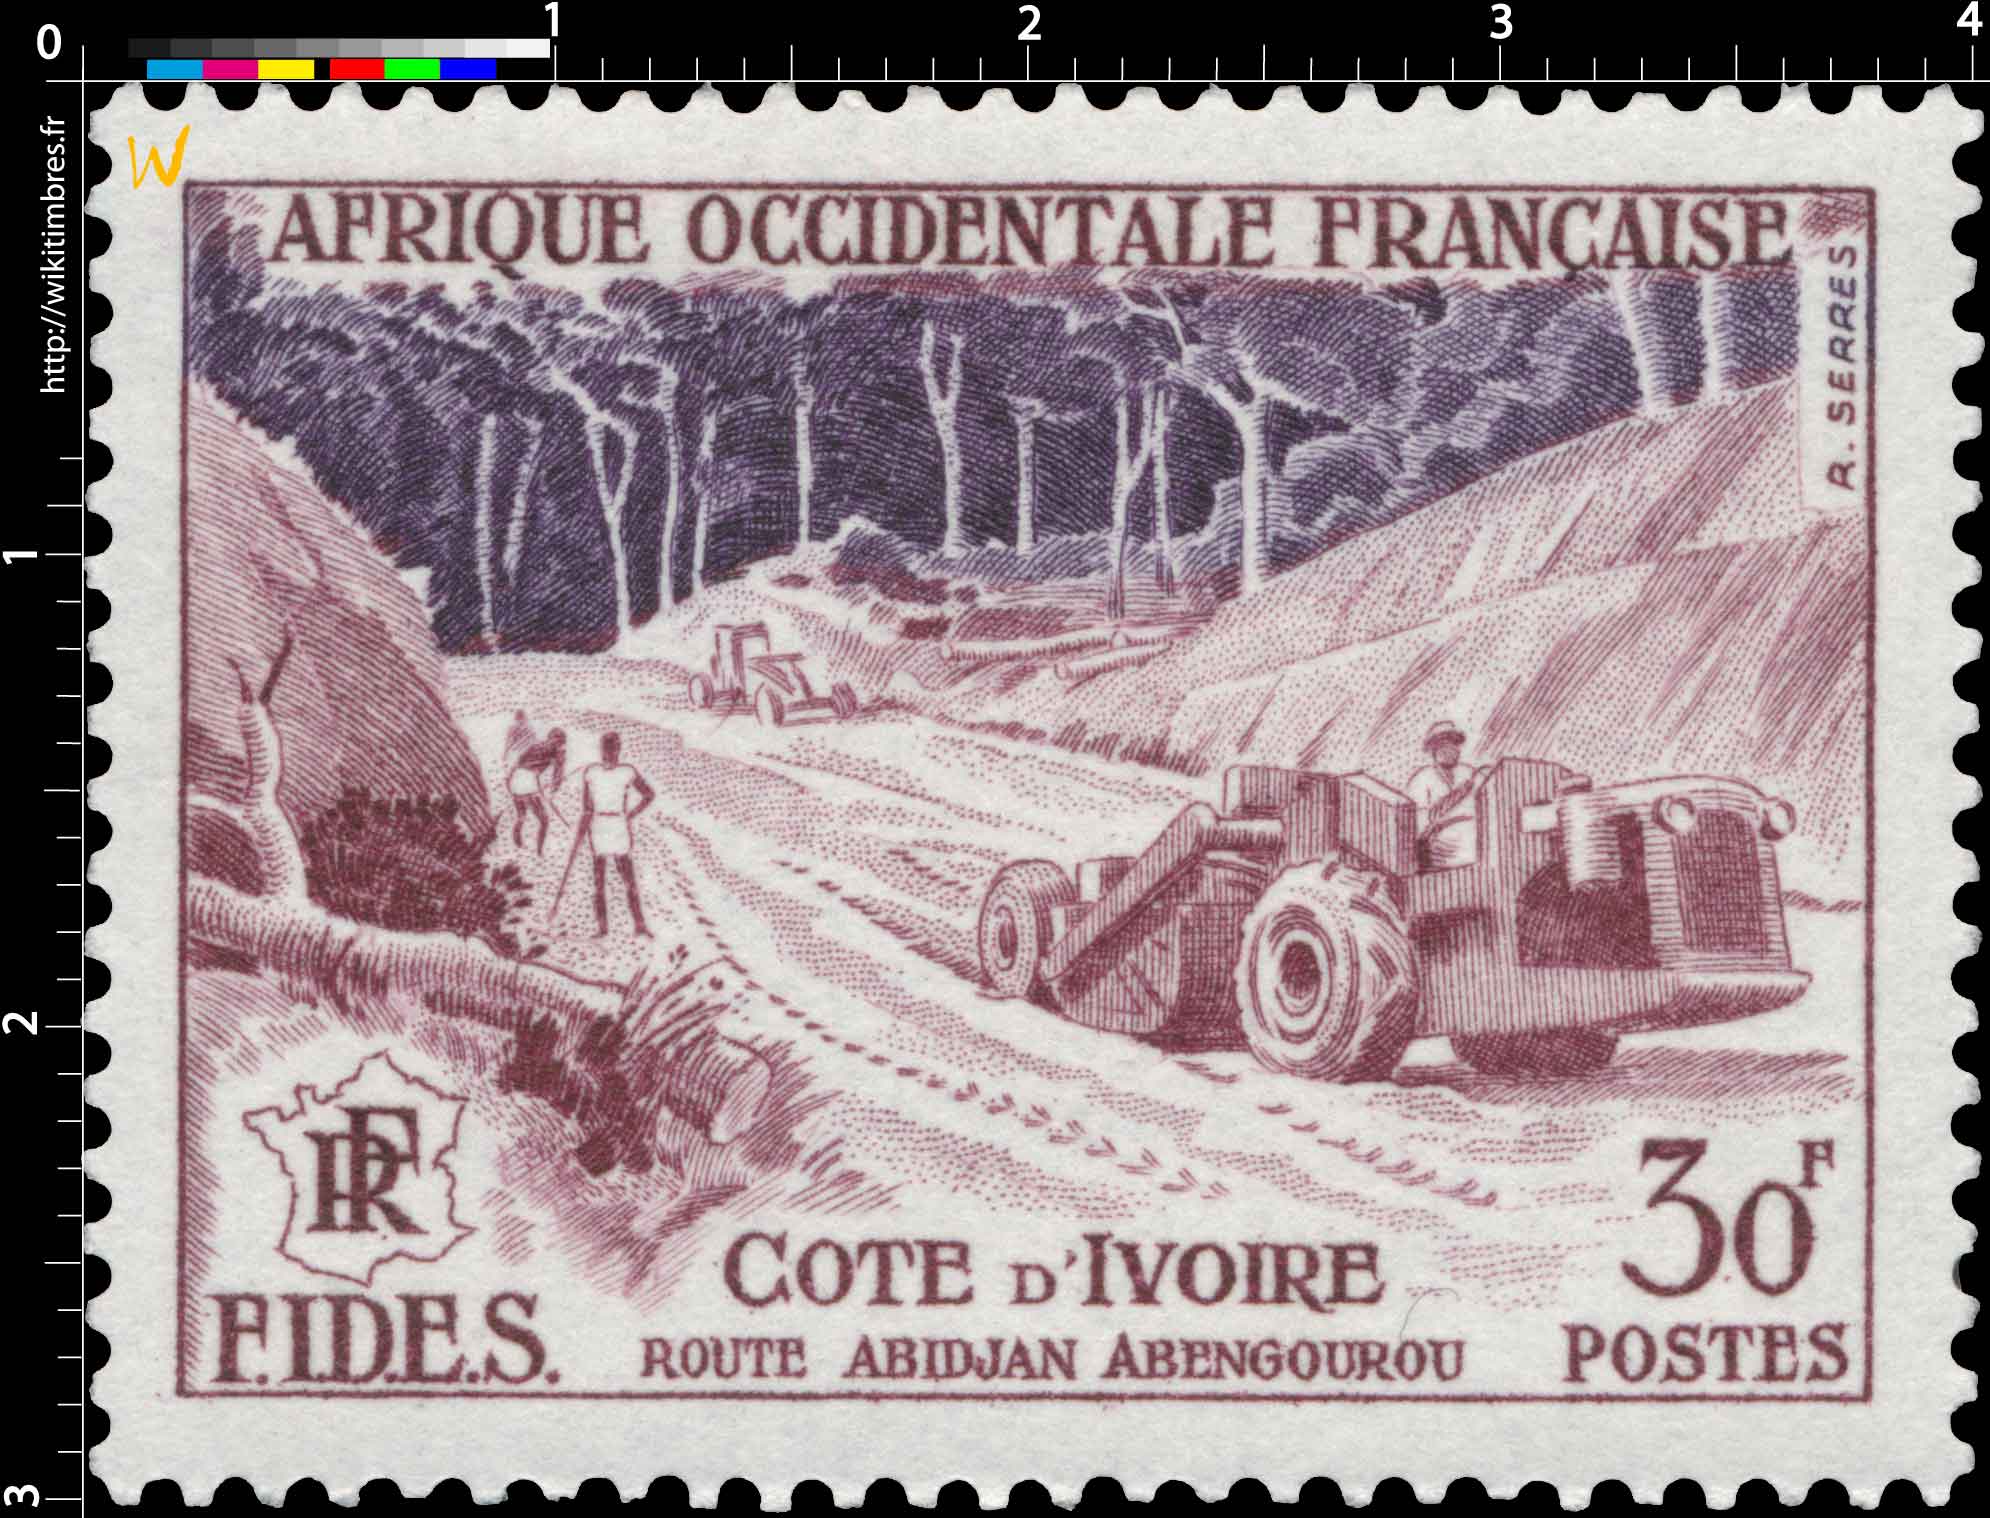 Afrique Occidentale Française - F.I.D.E.S. - Route Abidjan Abengourou Côte d'Ivoire